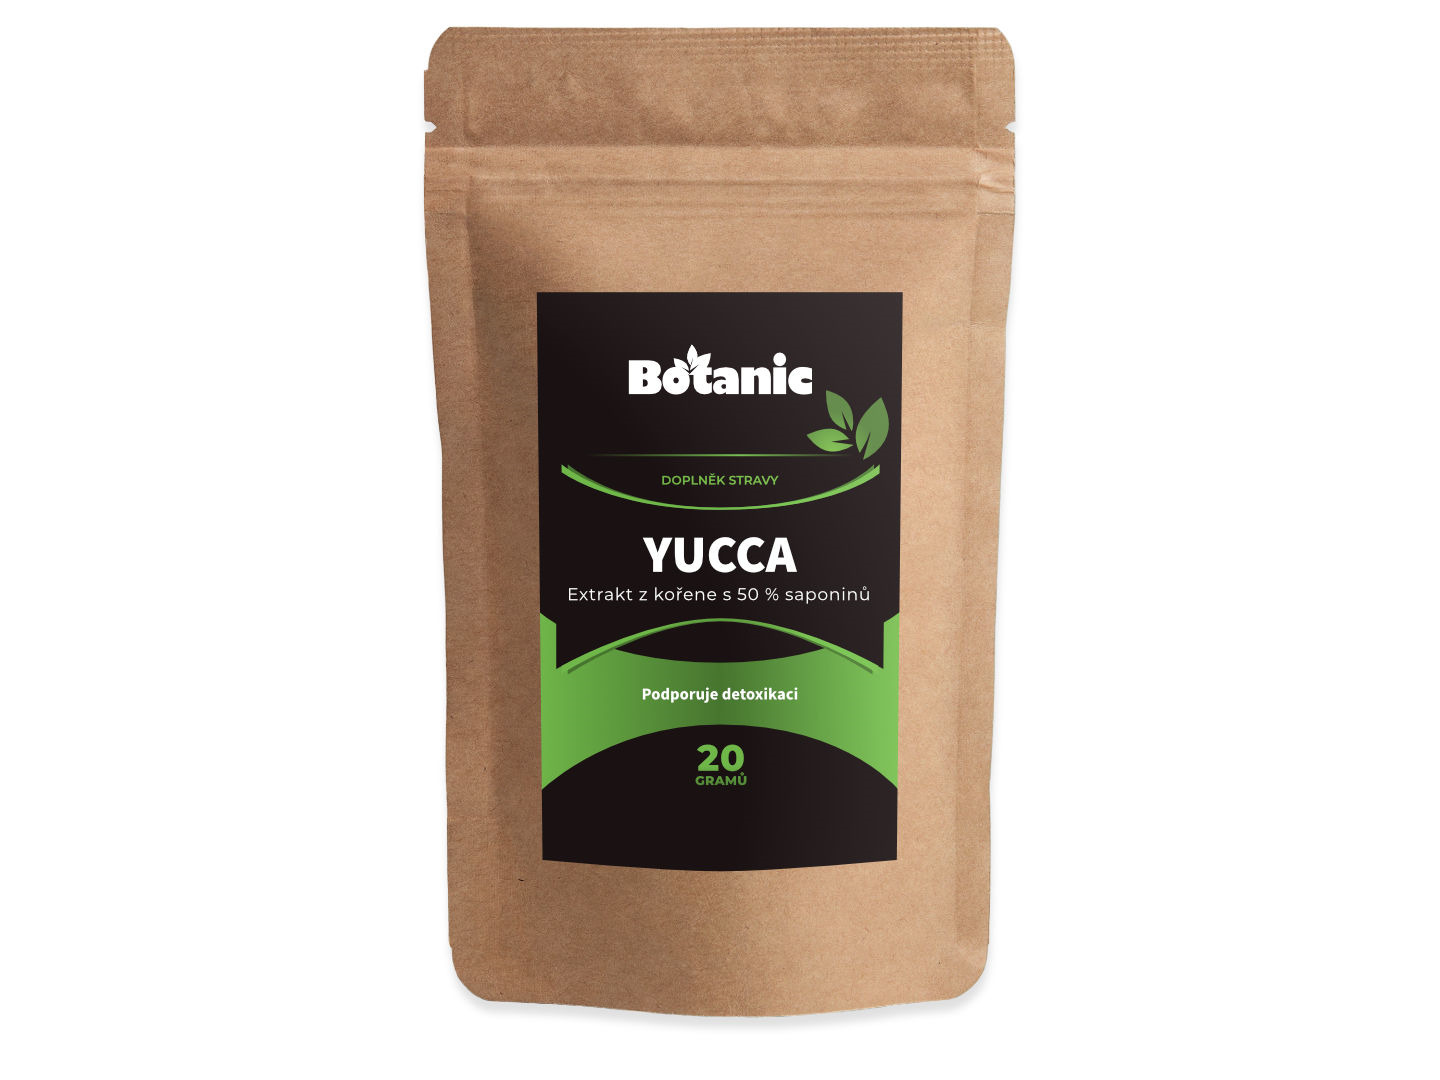 Botanic Yucca - Extrakt z kořene s 50 % saponinů sypaná forma 20g